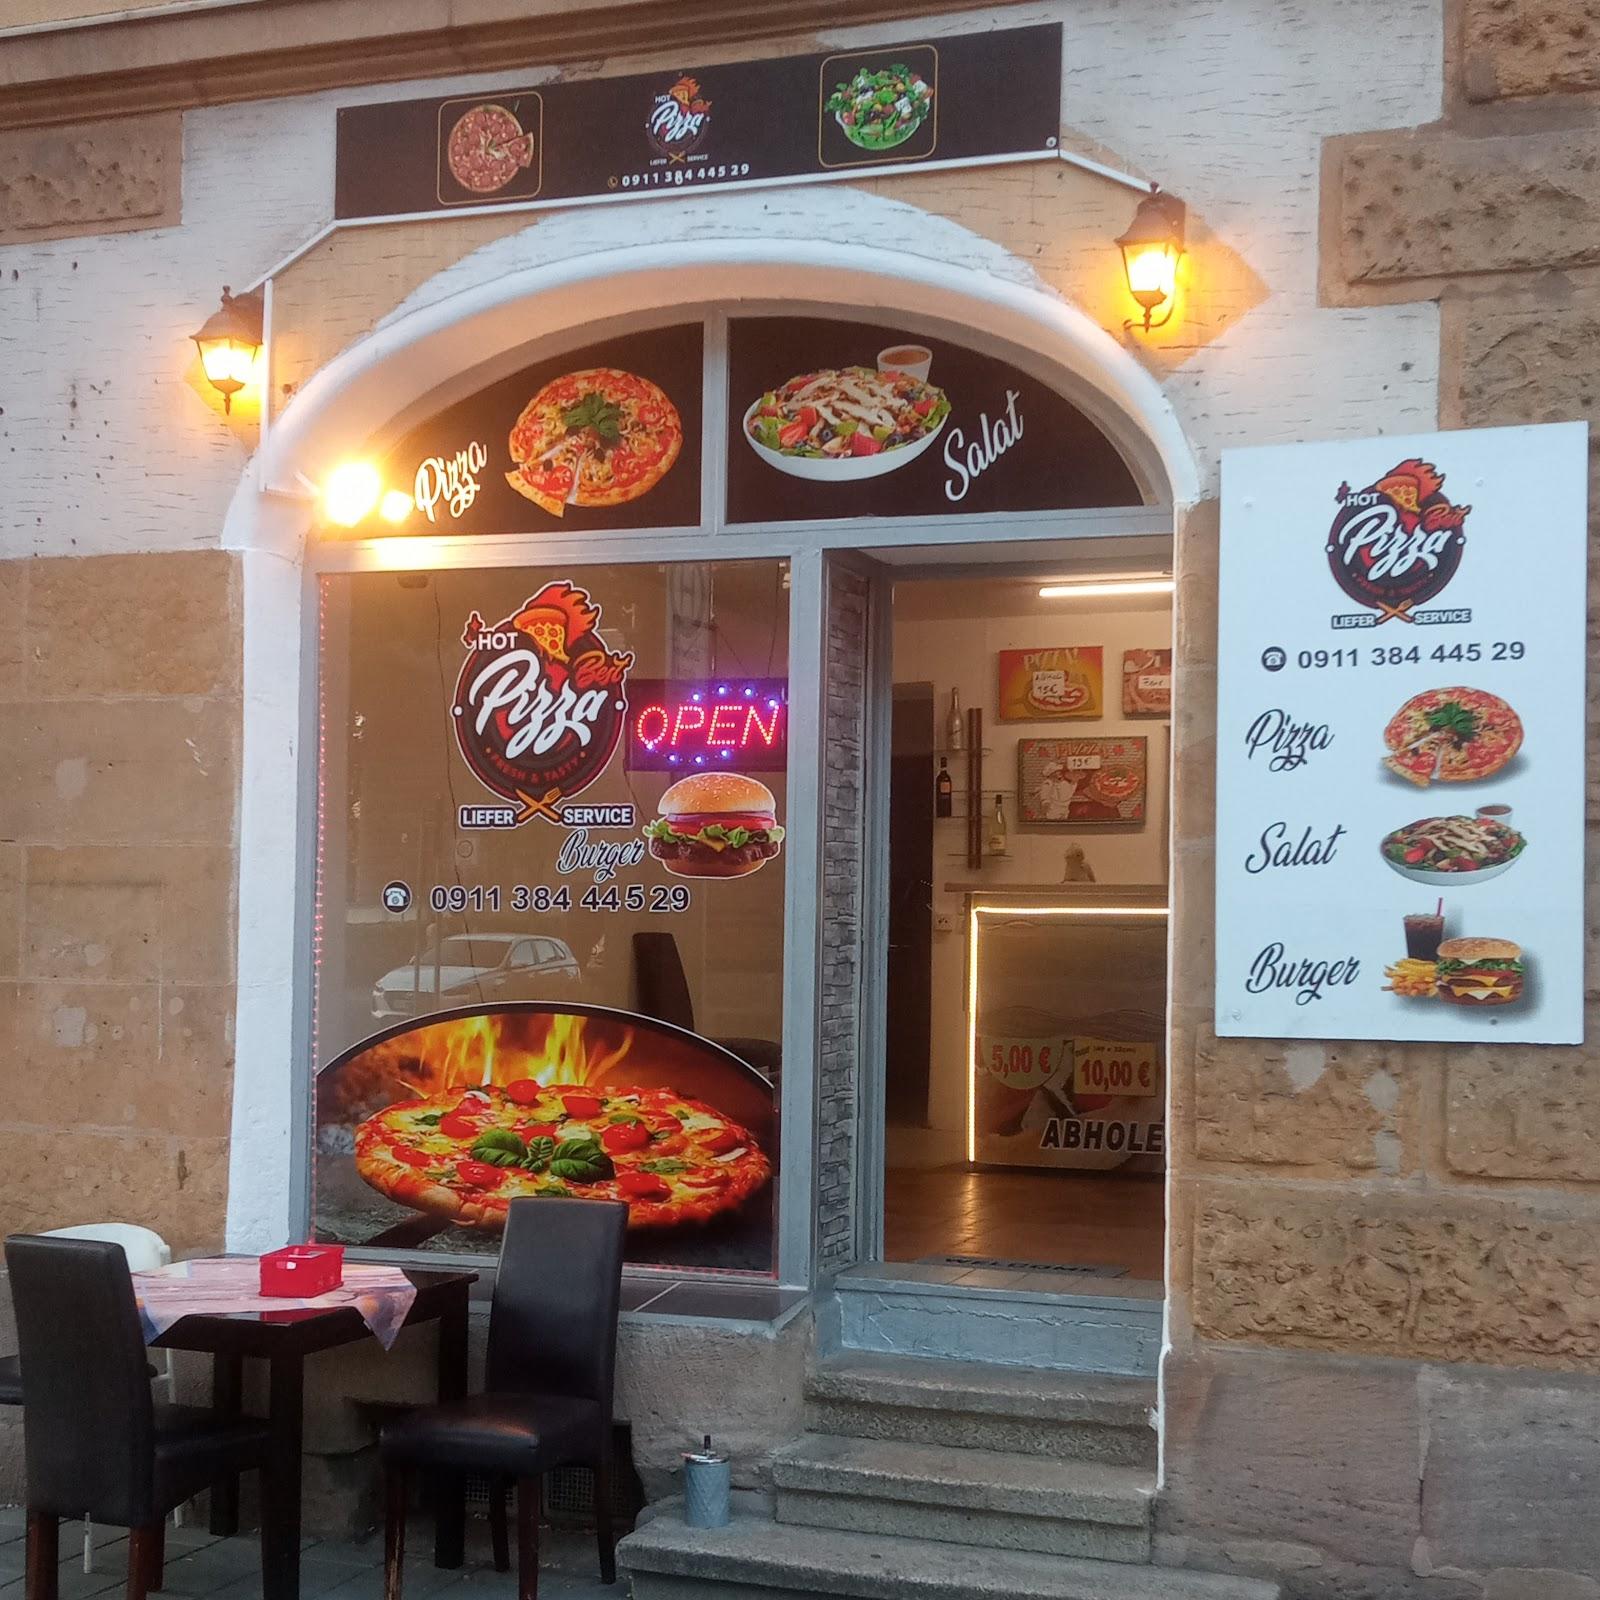 Restaurant "Hot Pizza" in Fürth